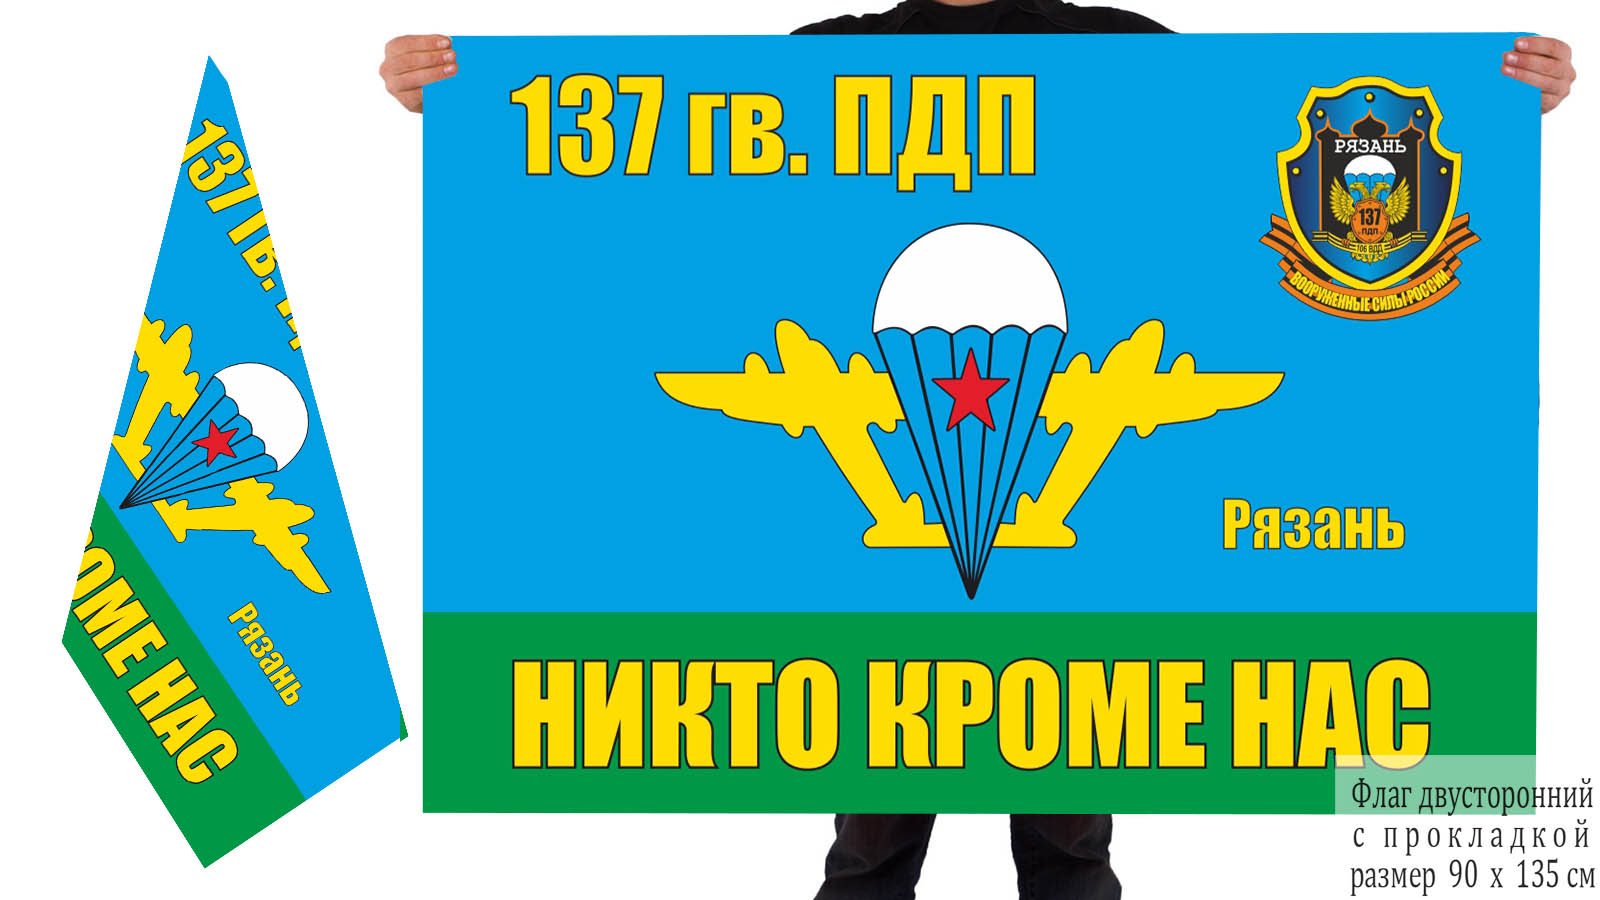 Двусторонний флаг 137 Гв. ПДП